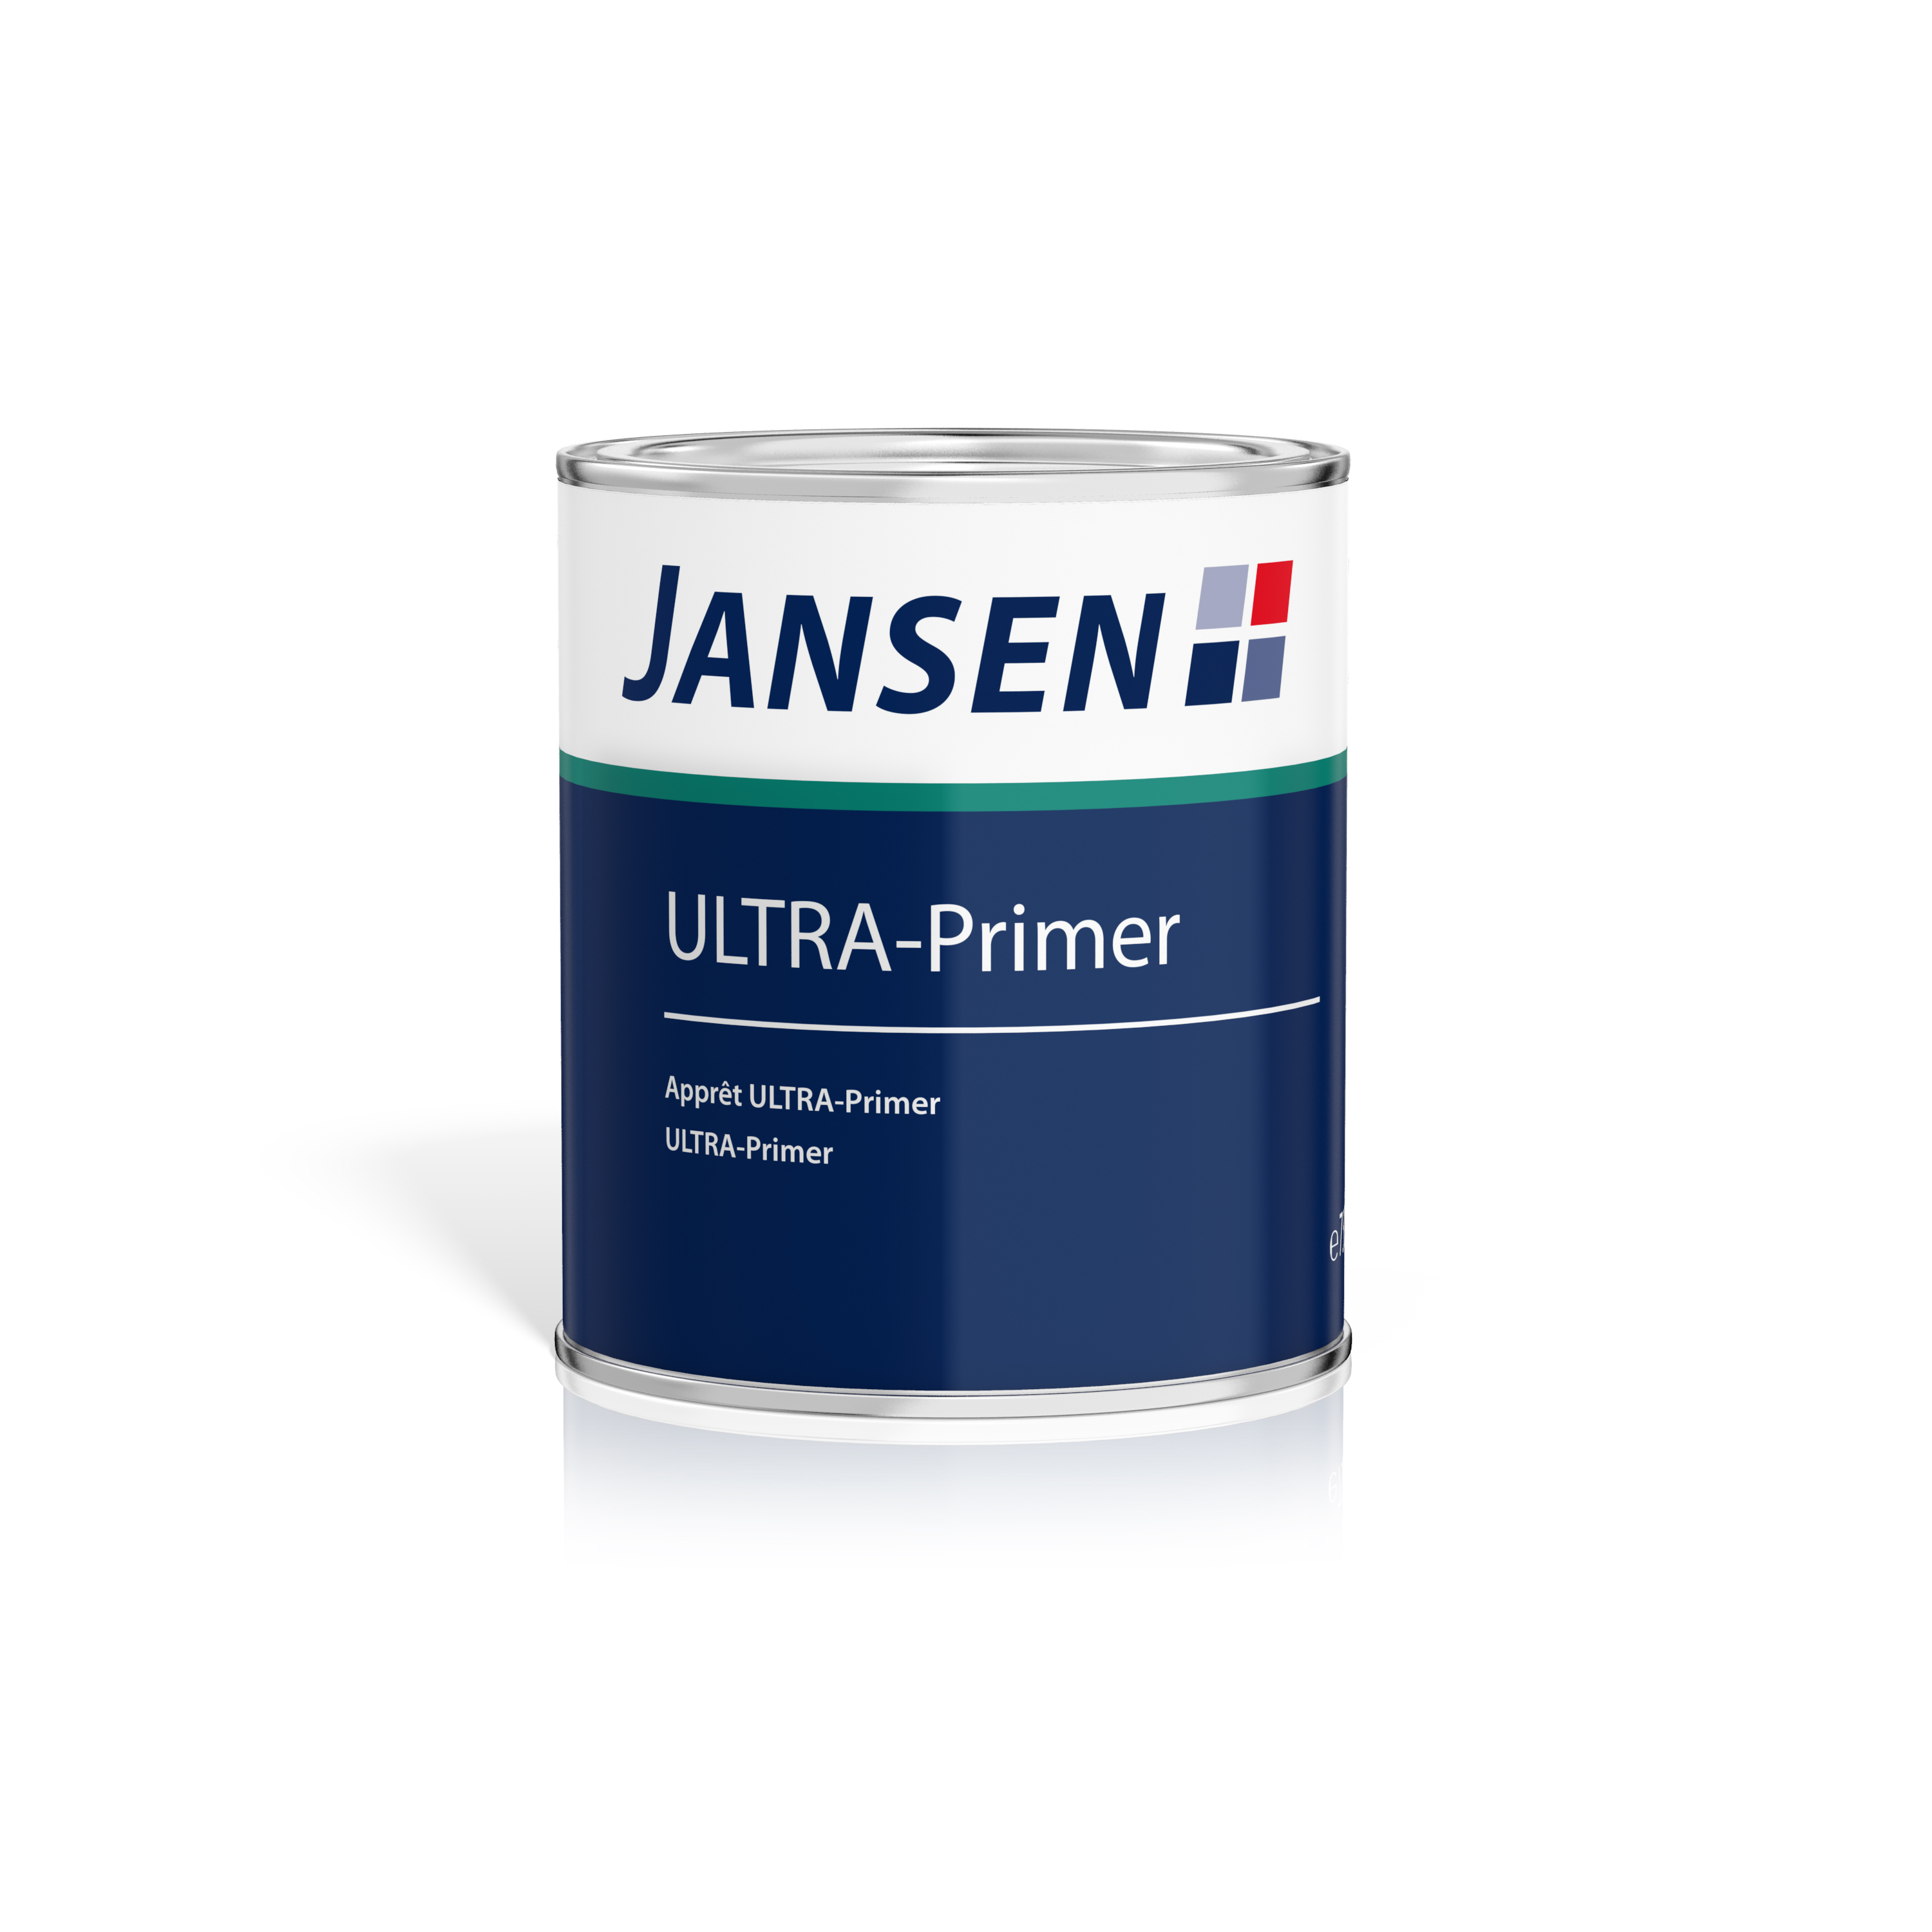 Jansen Ultra-Primer